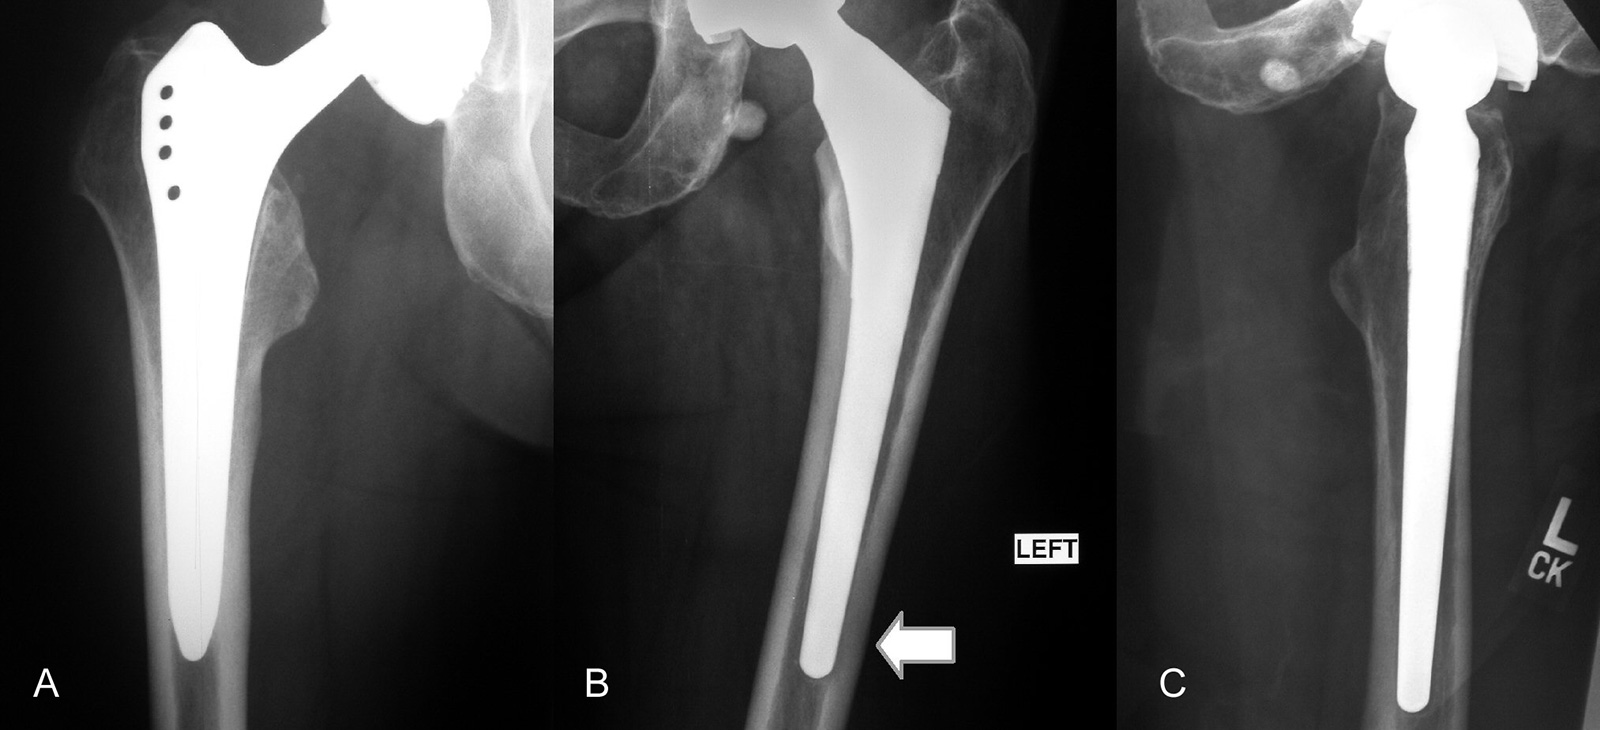 Abb. 1-24:  Patienten mit Schaftschmerzen aufgrund eines massiven Implantats mit distaler Verankerung  (A), bzw. eines varisch eingebrachten Prothesenschafts (B,C)